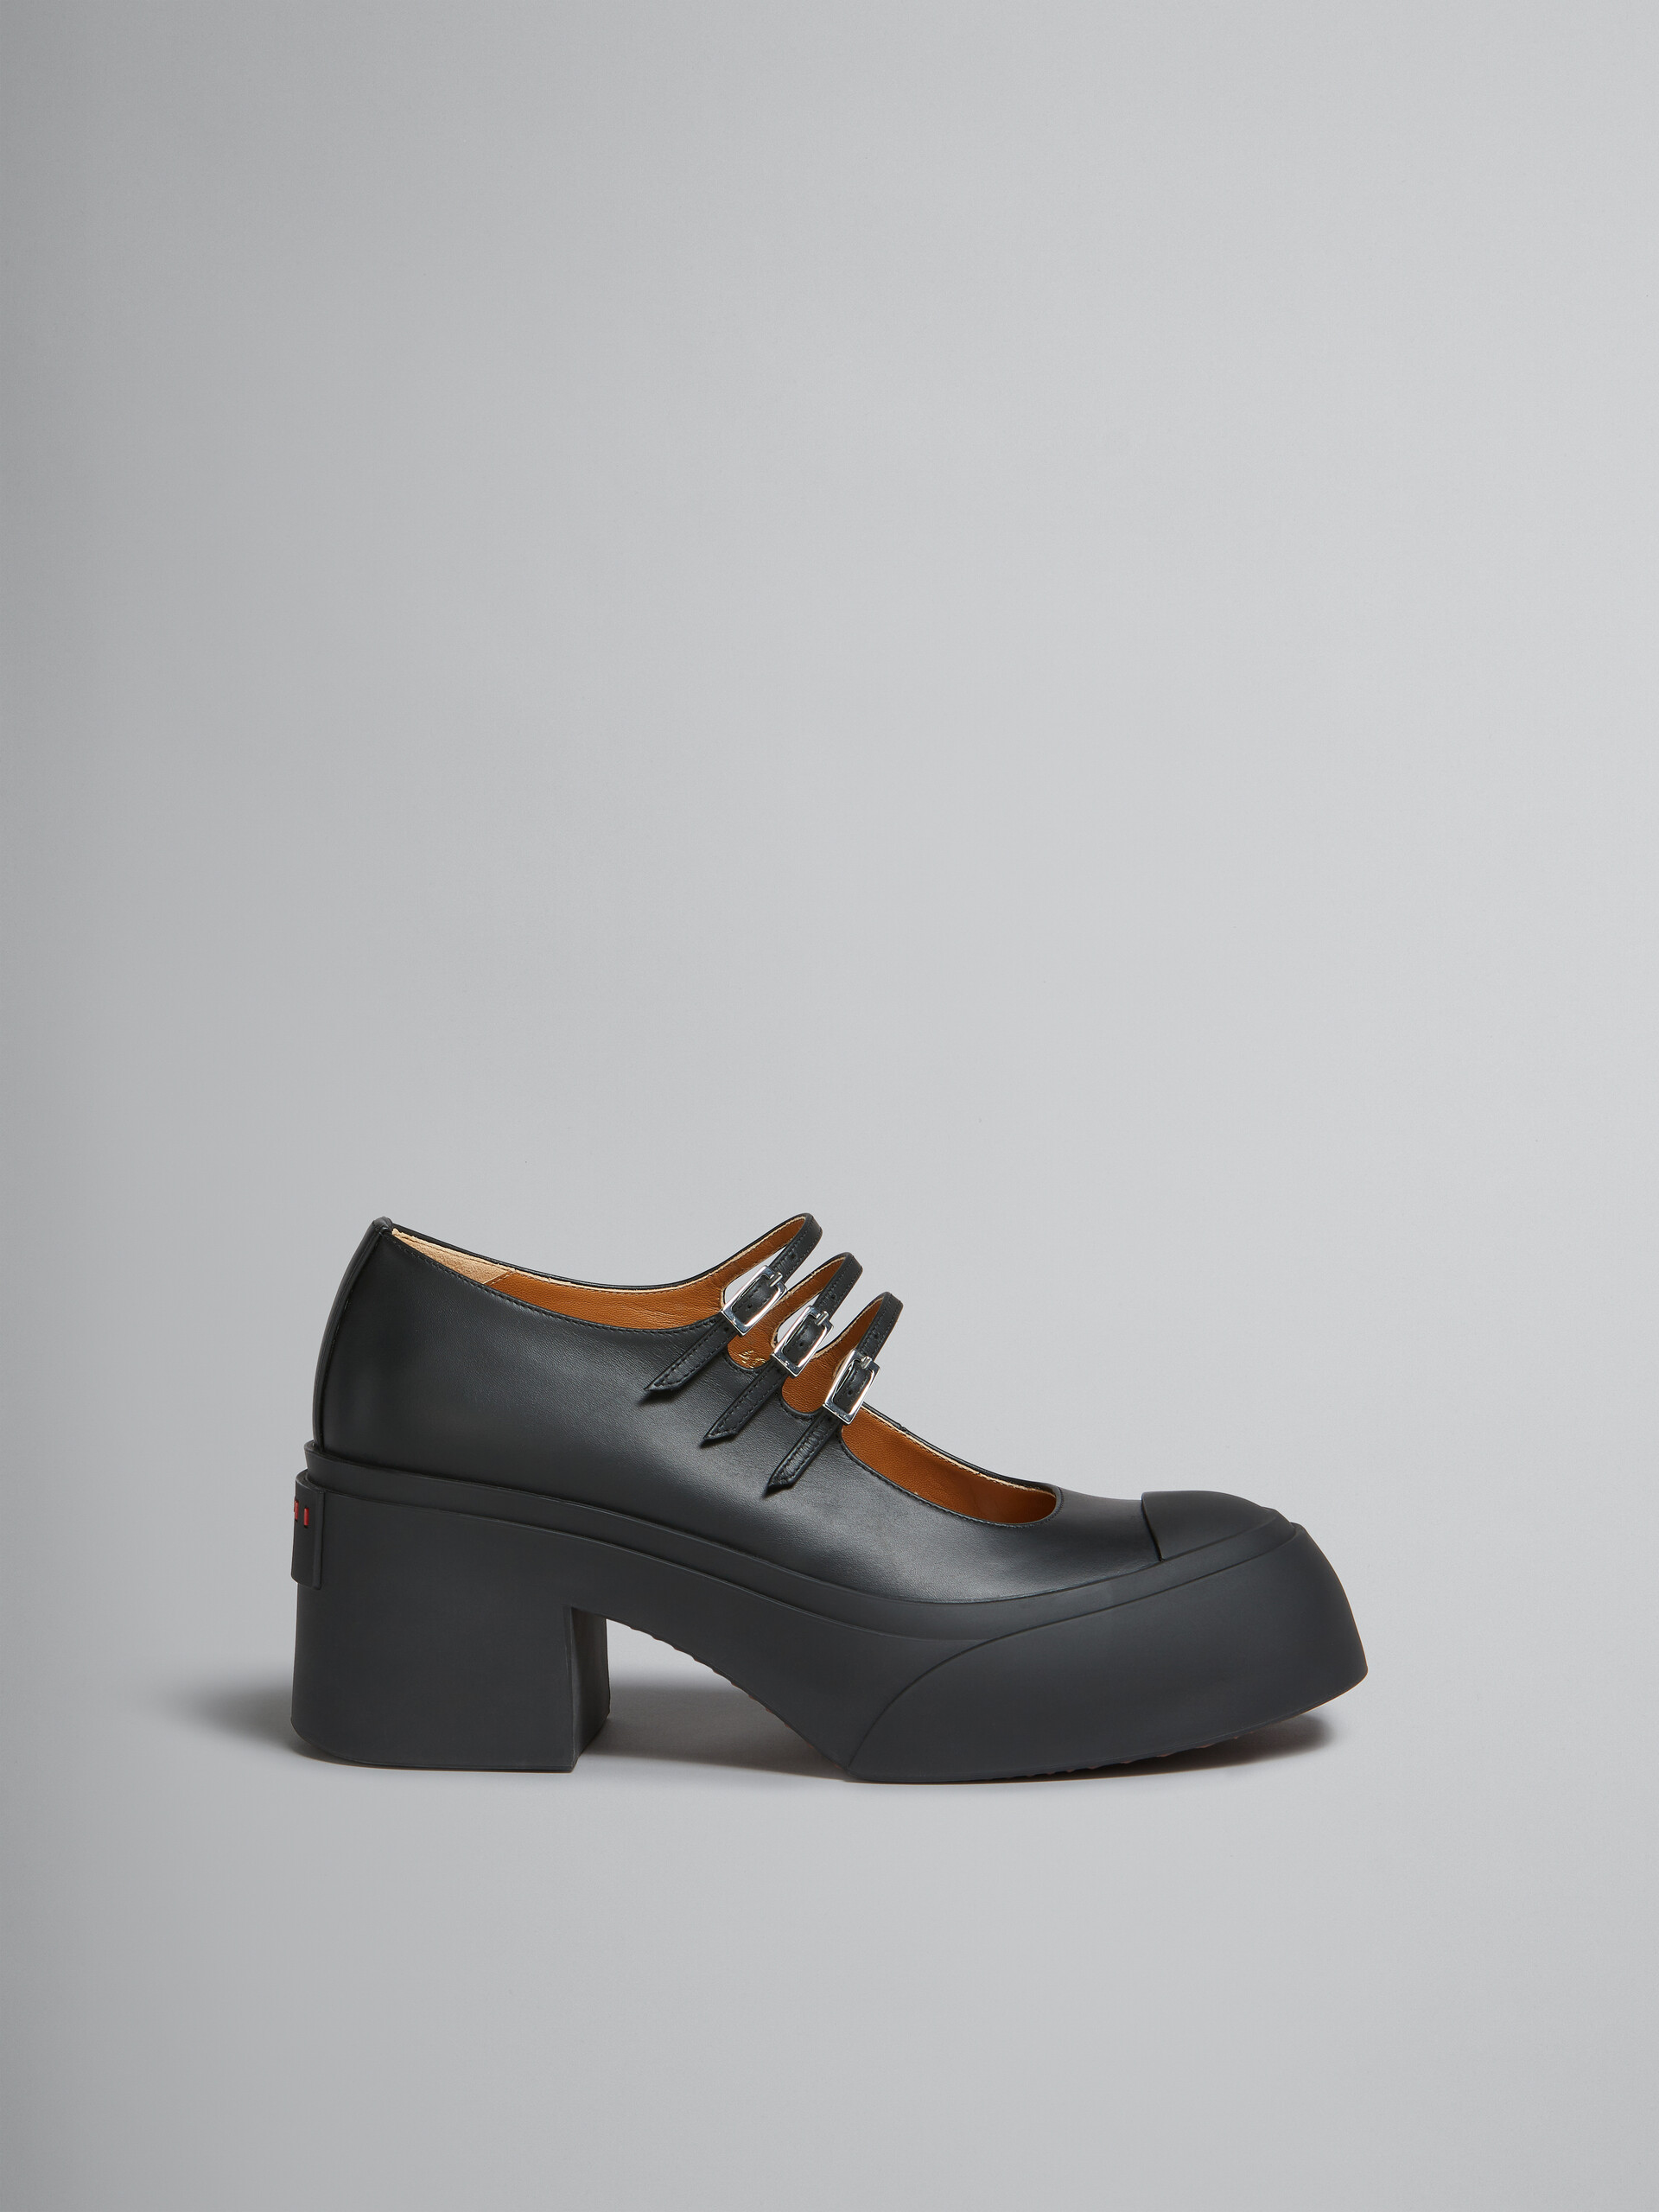 Scarpa Pablo Mary Jane in pelle nera con triplo cinturino - Sneakers - Image 1